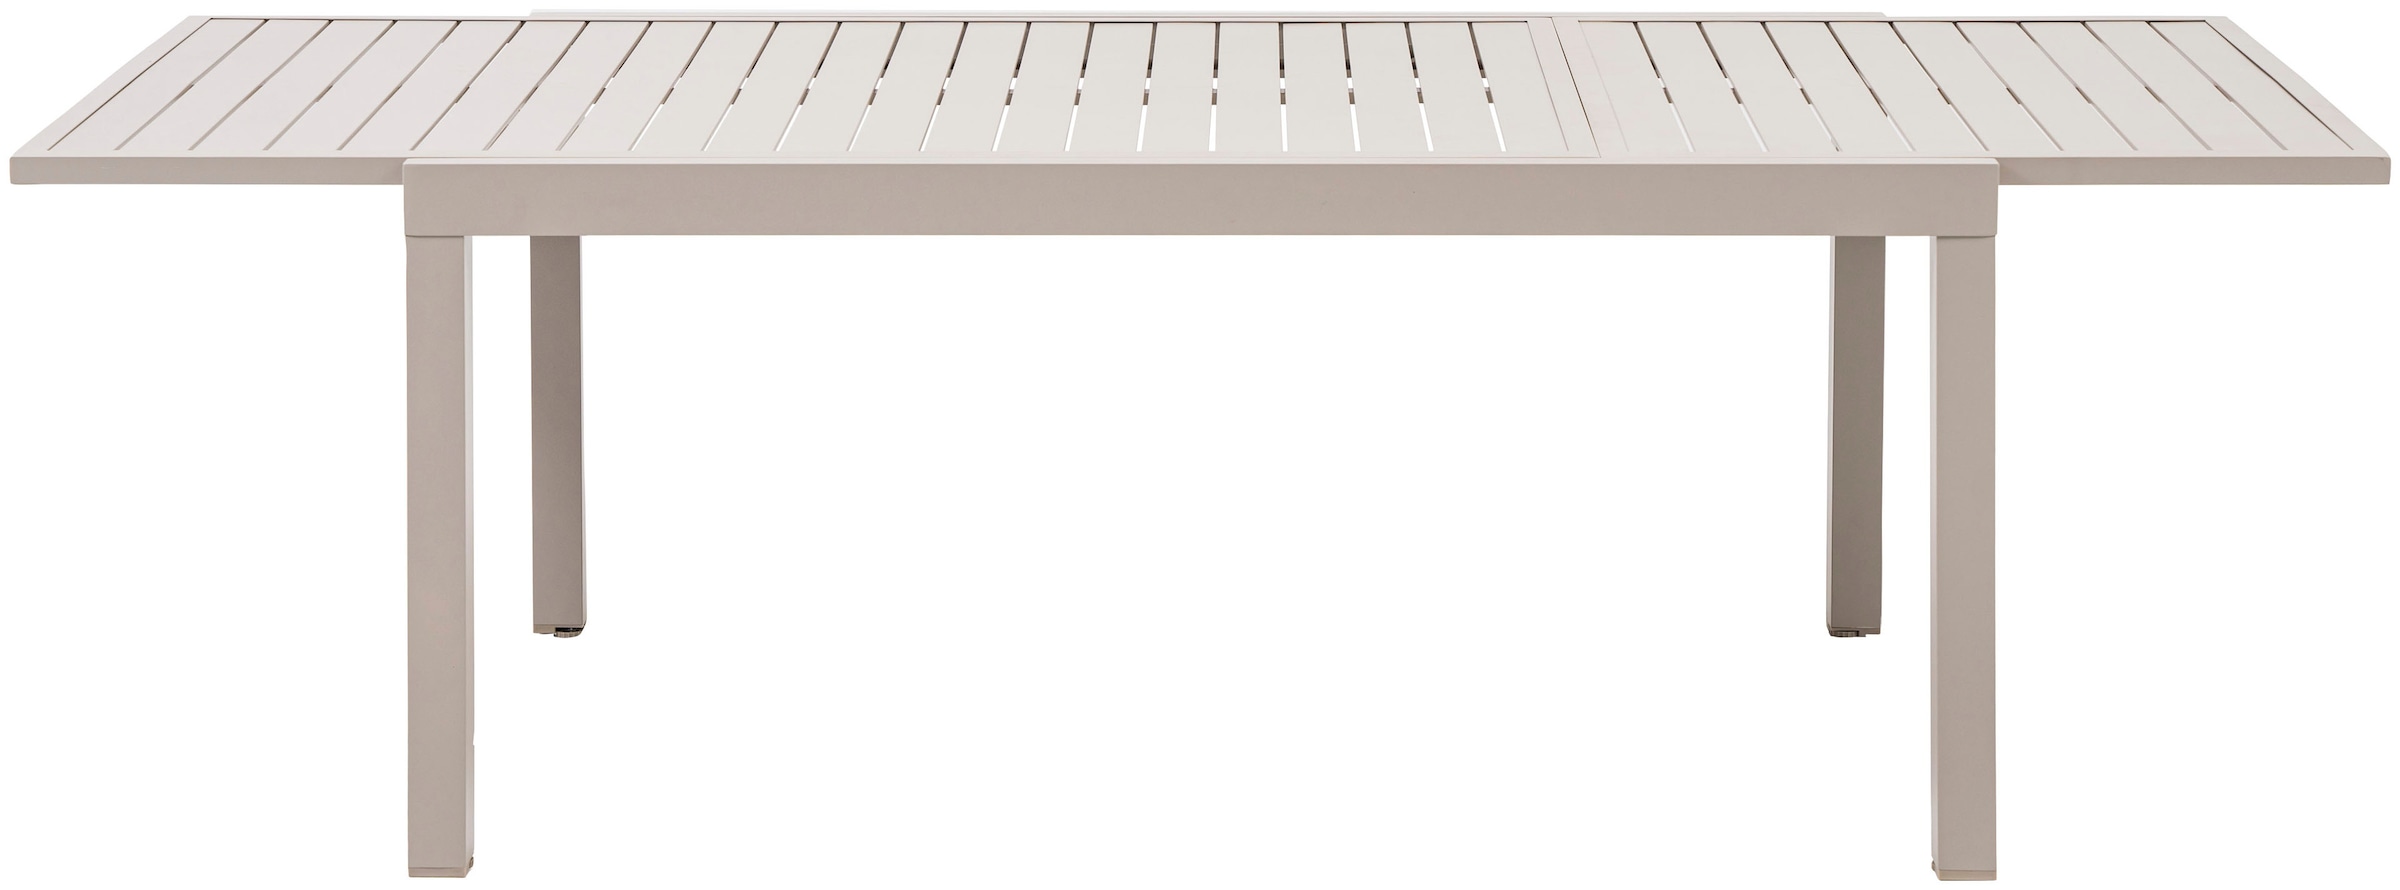 KONIFERA Garten-Essgruppe »Palermo«, (Set, 9 tlg., 8x Sessel, 1x AZ-Tisch 160-240x100 cm, Aluminium, Textilgewebe), klappbar, 7-fach verstellbare Rückenlehne, Tischplatte aus Alulatten